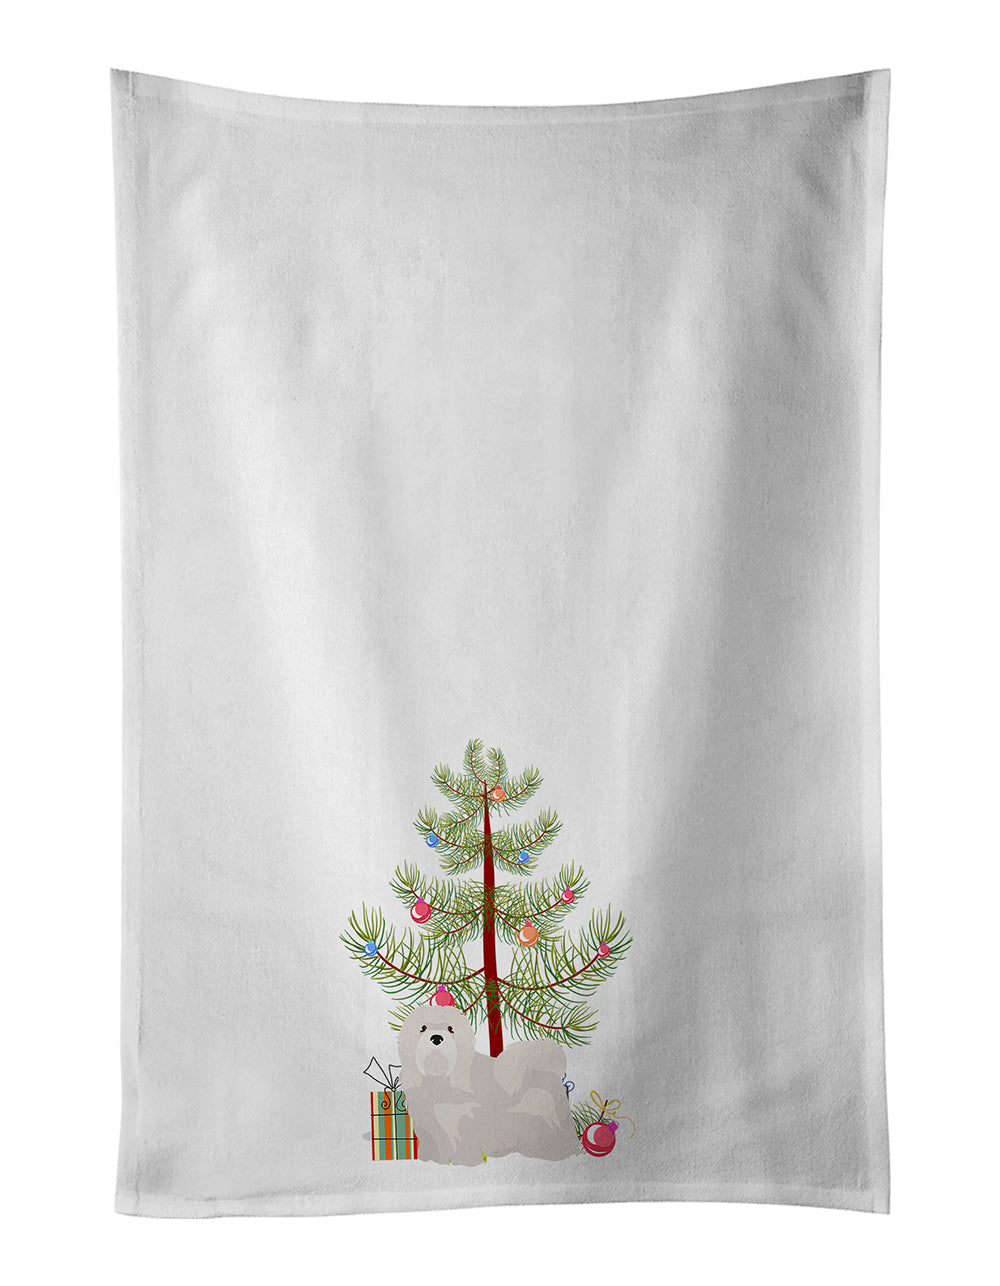 Buy this White Lhasa Apso Christmas Tree White Kitchen Towel Set of 2